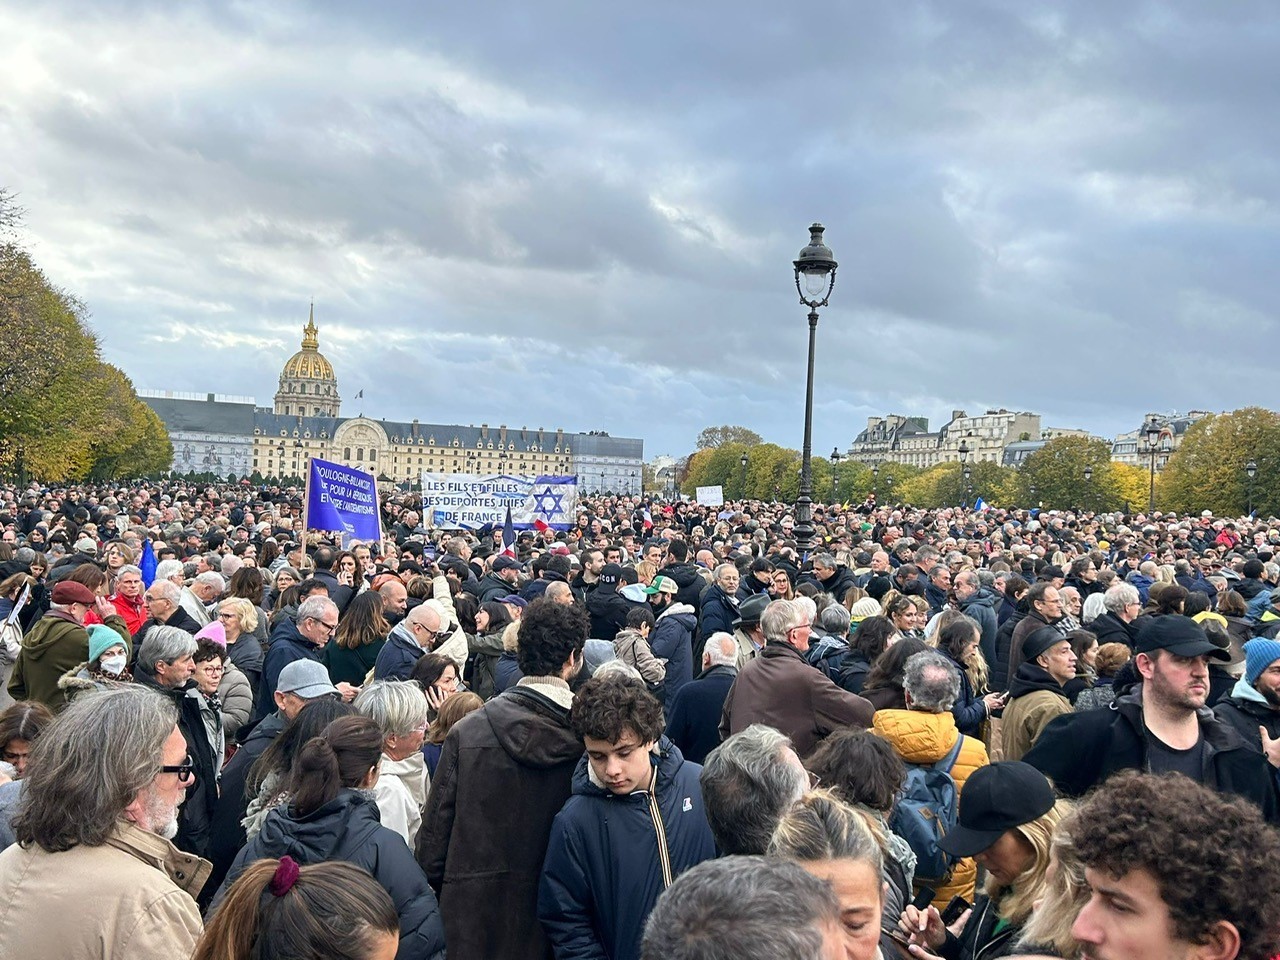 Marcha contra el antisemitismo este domingo en Par